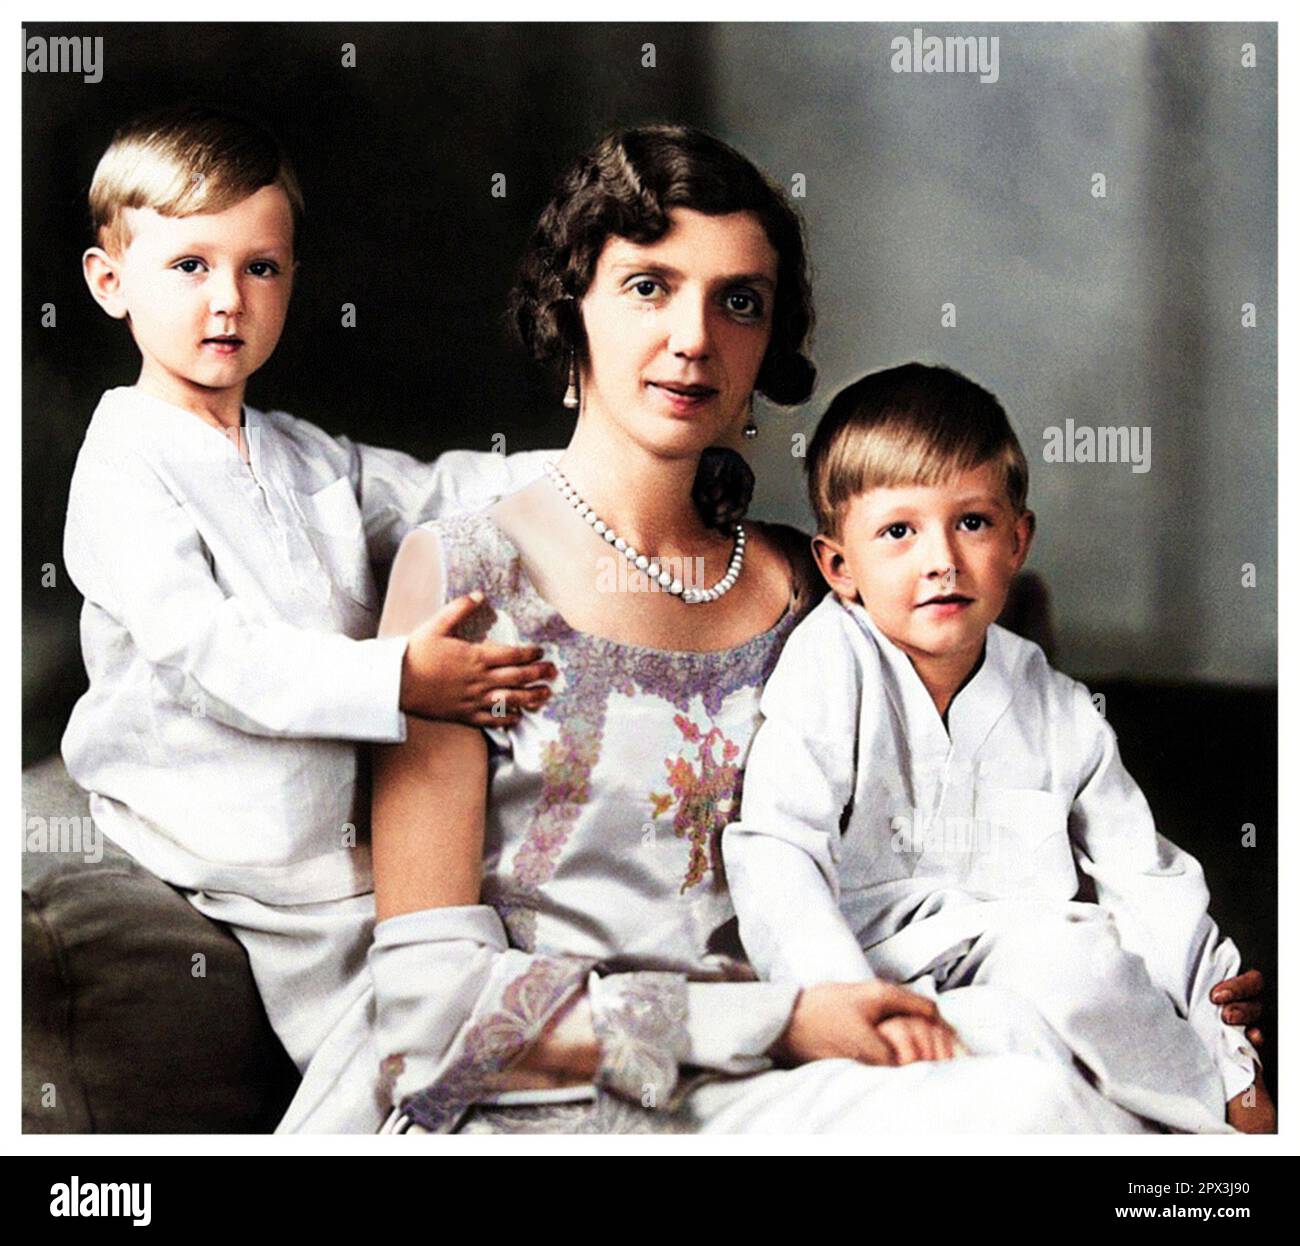 1932 c., Rome , ITALIE : la princesse italienne MAFALDA di SAVOIA ( 1902 - 1944 ), mariée au prince allemand Filippo d'Assia Kassel ( Philipp de HESSE ), sur cette photo avec des fils : MORITZ ( Maurizio , 1926 - 2013 ) et HENRICH ( Enrico , 1927 - 1999 ). Mafalda était la fille du roi d'Italie VITTORIO EMANUELE III et de la reine ELENA ( Helene del Montenegro ). Photo d'EVA BARRETT ( 1879 - 1950 ). COLORISÉ NUMÉRIQUEMENT .- SAVOY - principessa - ITALIA - personalità celebità DA BAMBINI - da piccolo da piccoli piccola - bambino - ENFANT - ENFANCE - FANTAZIA - PERSONNALITÉ CÉLÉBRITÉ - personnalités cele Banque D'Images